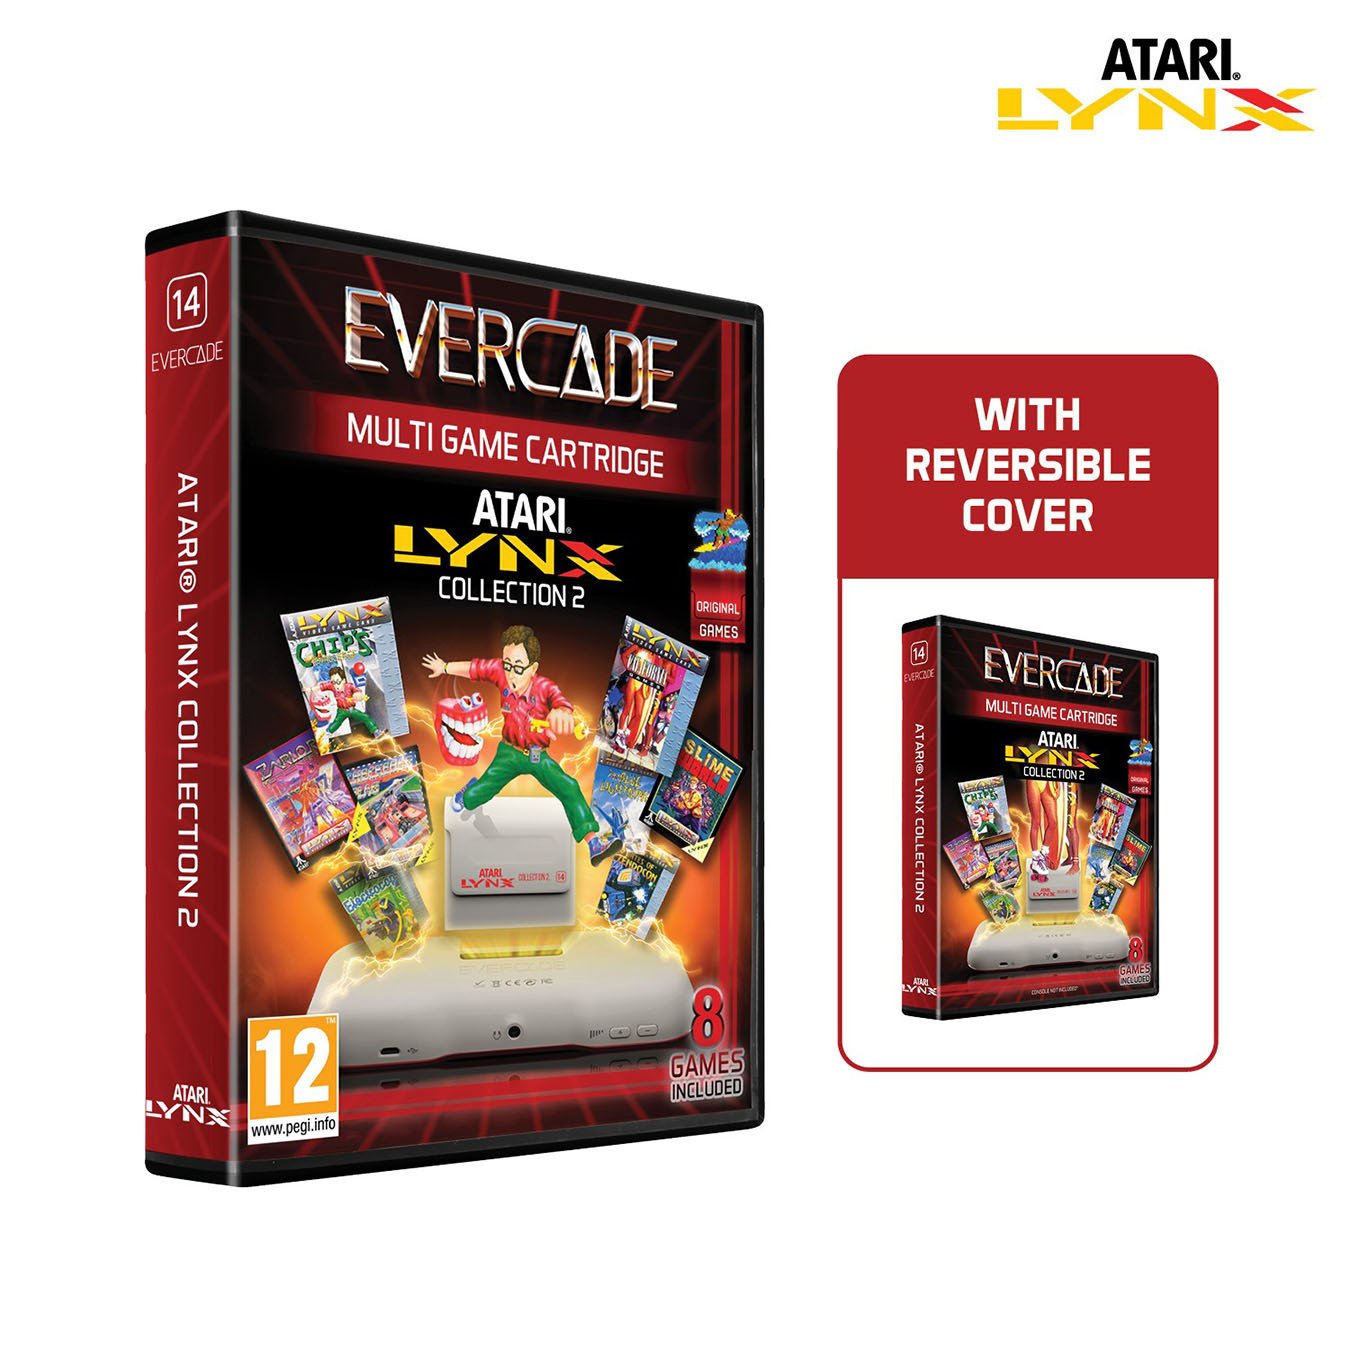 Blaze Evercade Atari Lynx Collection 2 Pre-Order Review